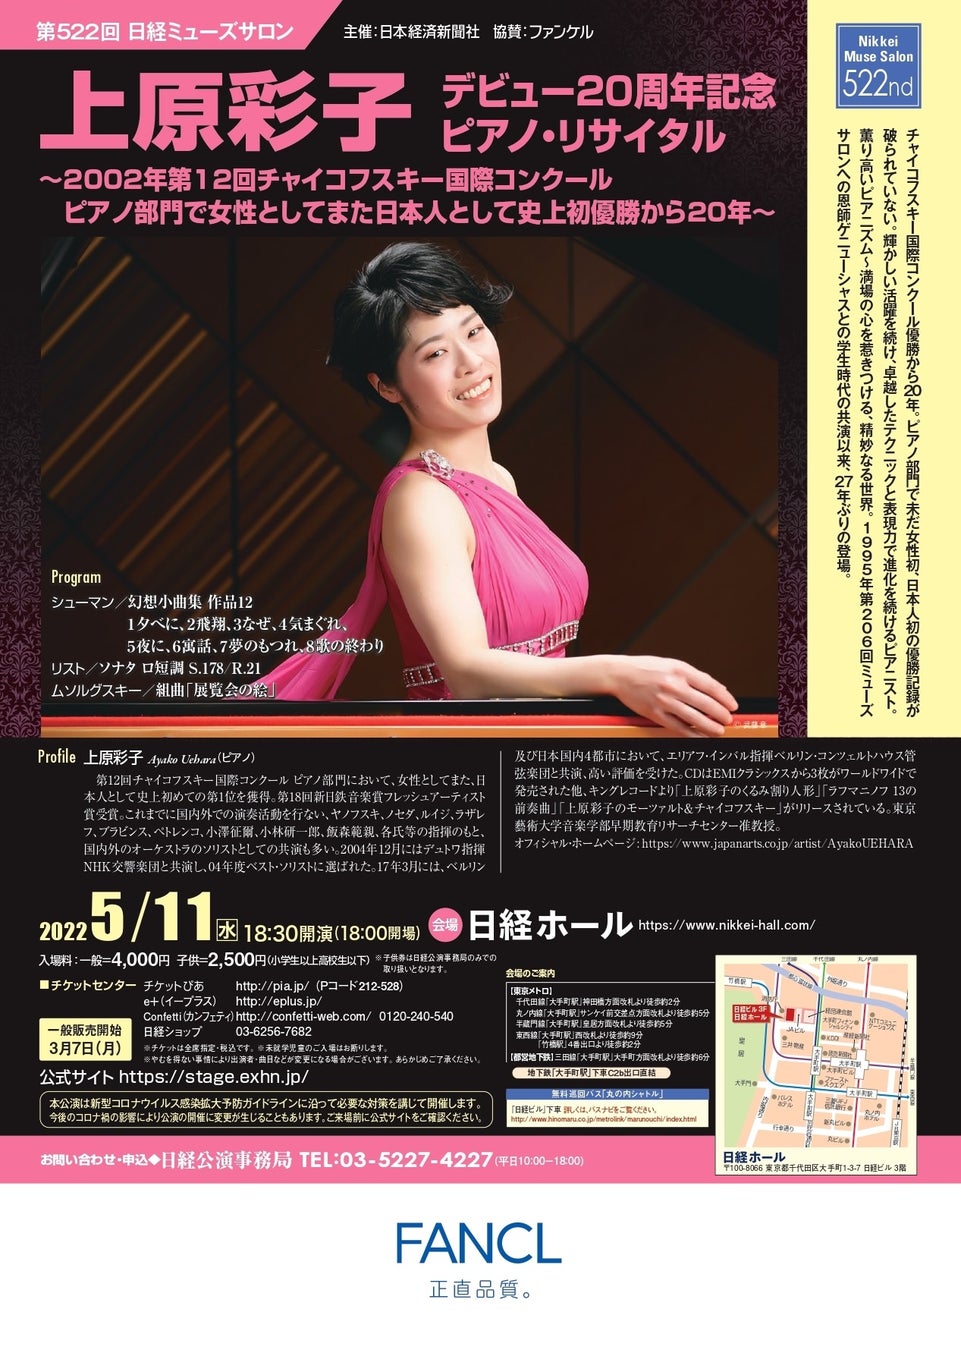 チャイコフスキー国際コンクールピアノ部門で女性として、日本人としての史上初優勝から20年　第522回日経ミューズサロン『上原彩子　デビュー20周年記念ピアノ・リサイタル』　カンフェティでチケット発売